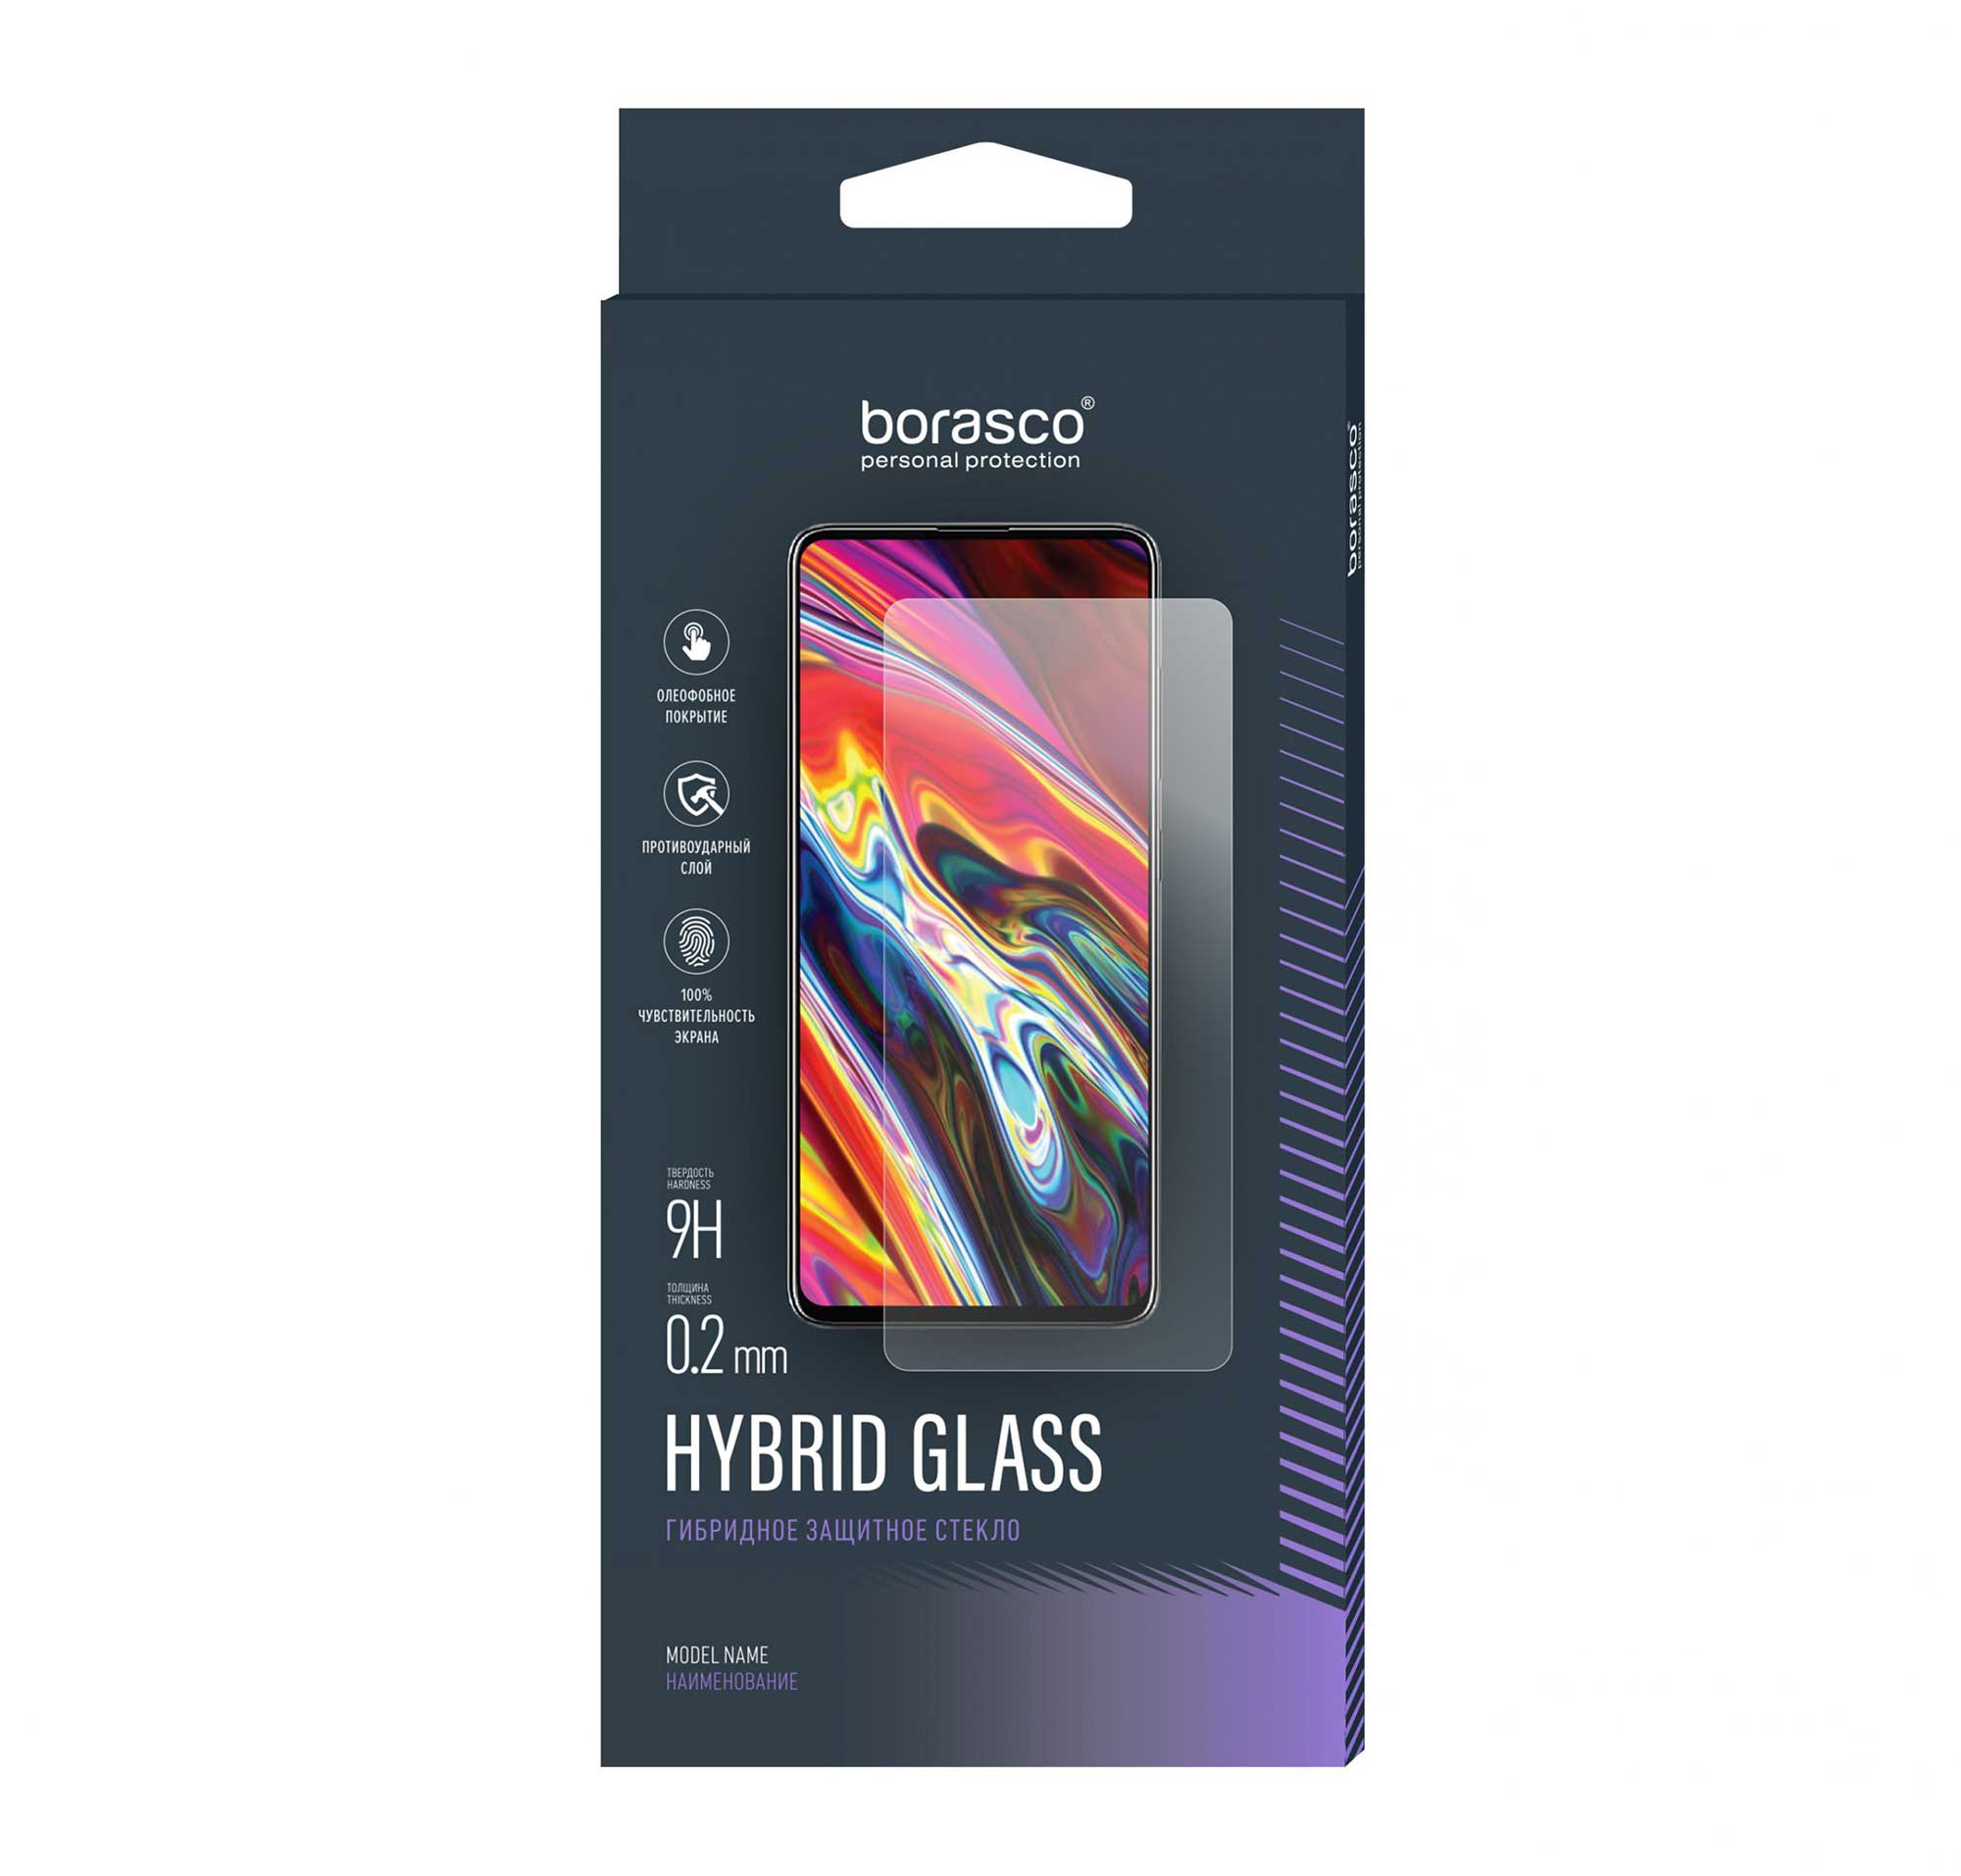 Защитное стекло BoraSCO Hybrid Glass для BQ 4030G NICE MINI защитное стекло для смартфона krutoff bq 4030g nice mini задняя сторона